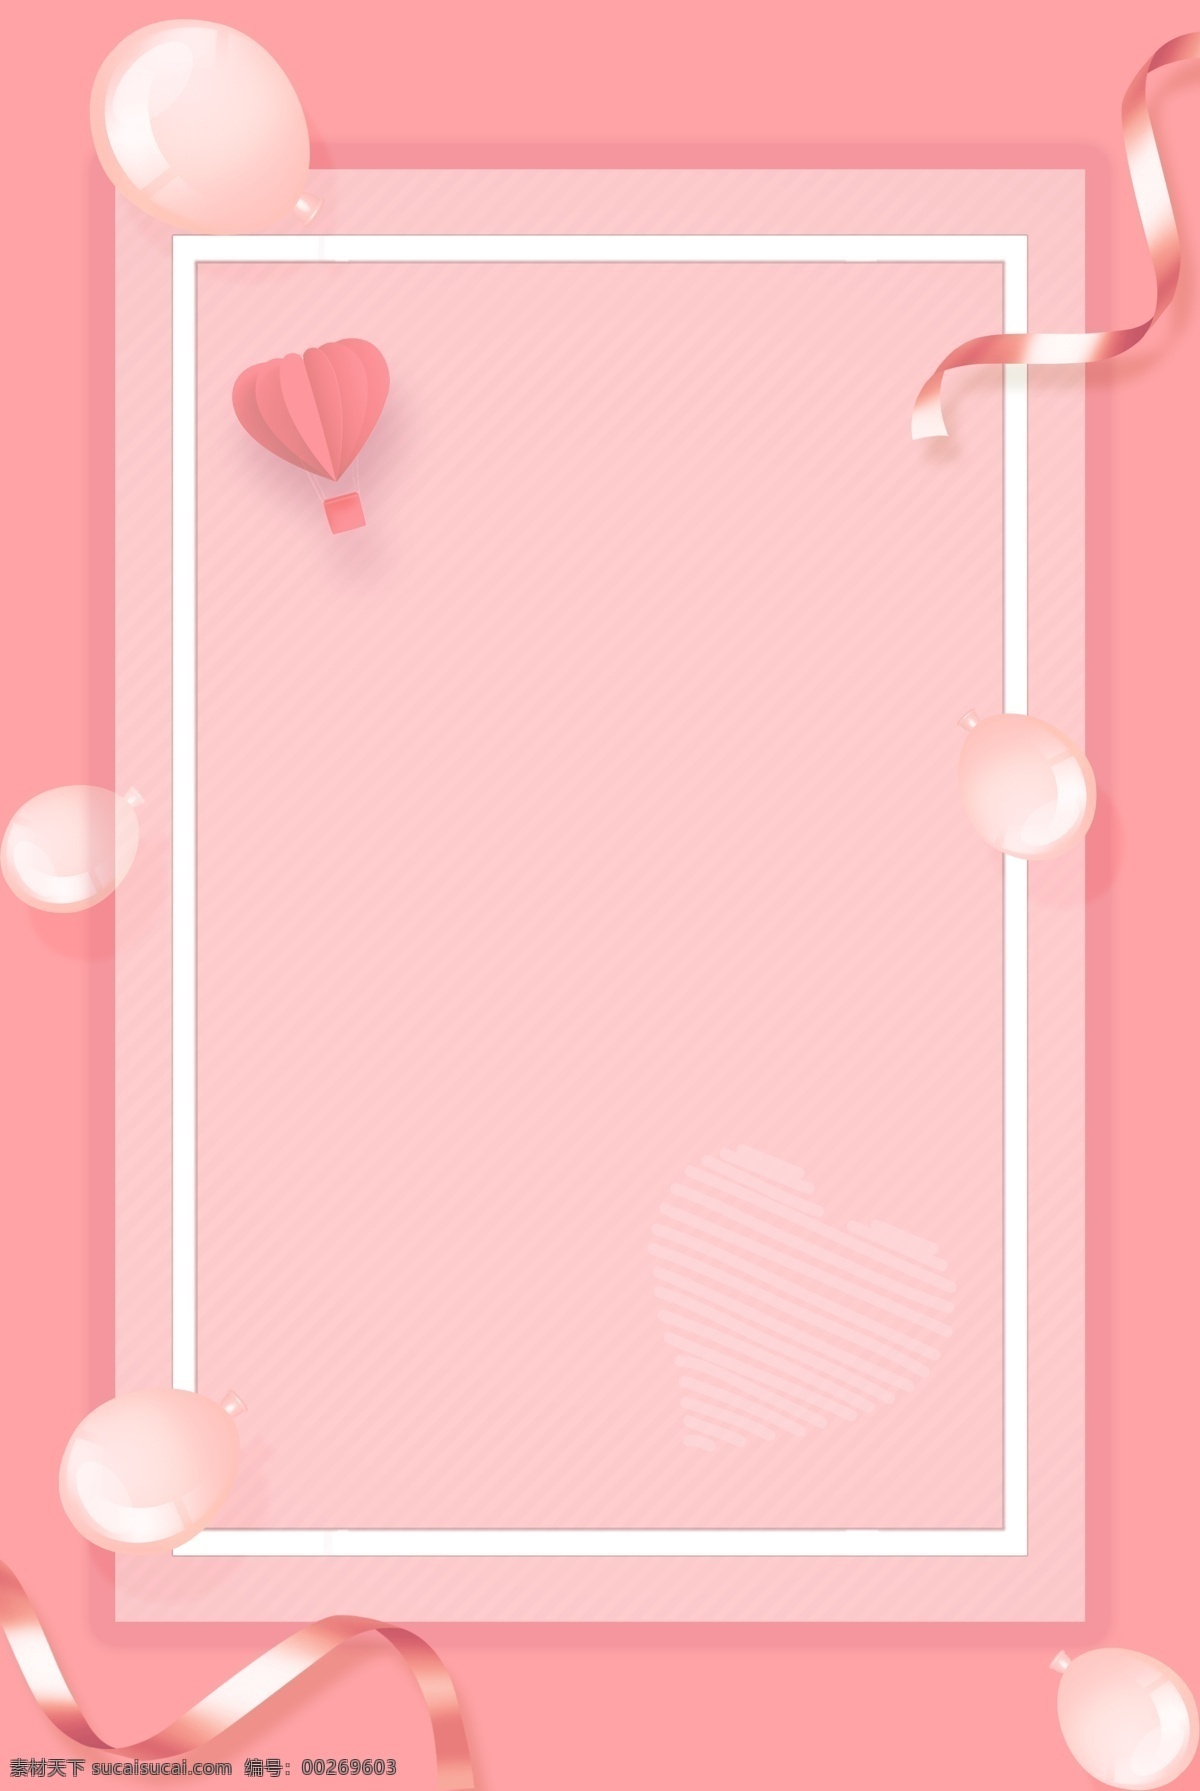 214 情人节 气球 粉色 丝带 温馨 海报 2.14 情人节促销 电商 情人节活动 粉色丝带 爱心热气球 简约